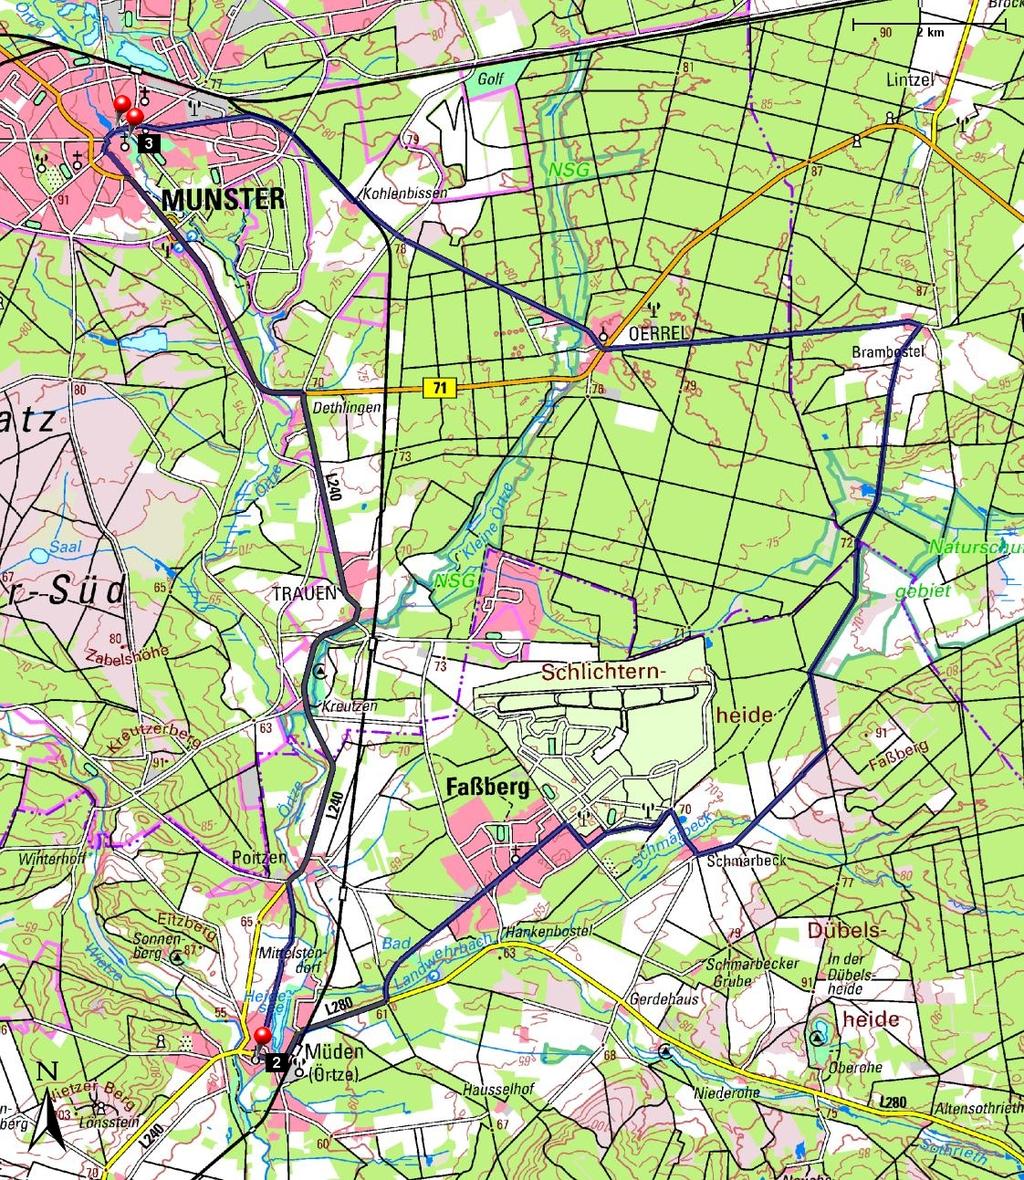 Länge: 42,07 km Steigung: + 31 m / - 31 m Start: Verlauf: Oerrel, Faßberg, Müden / Örtze, Trauen